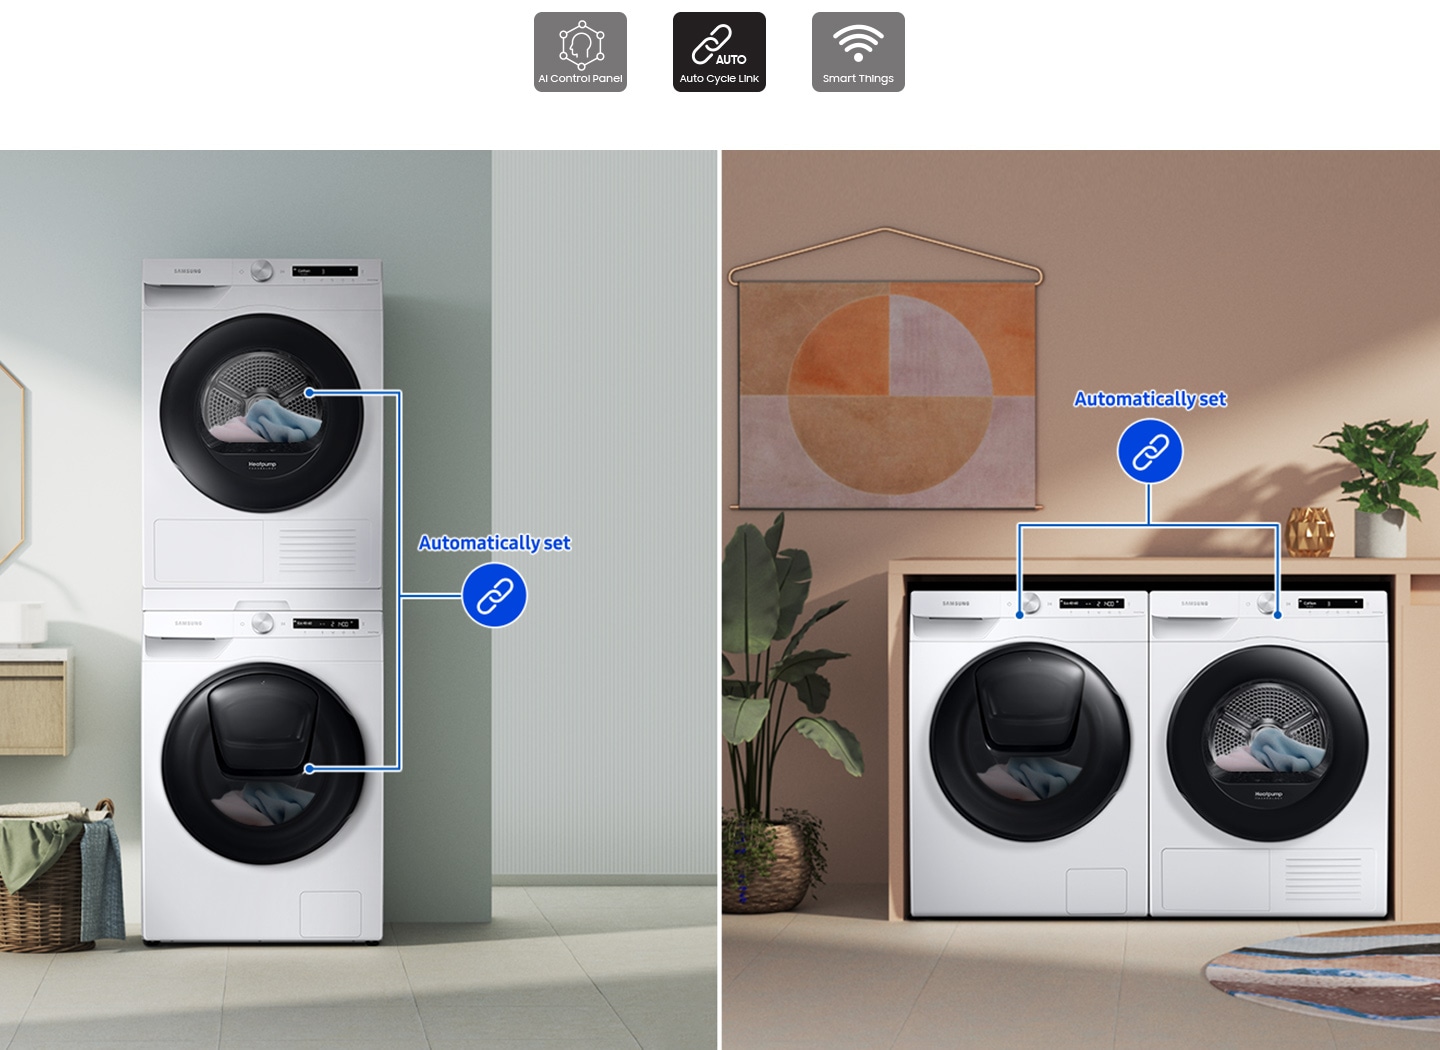 Dois conjuntos de lavadoras e secadoras são colocados de forma diferente em dois espaços separados. Cada conjunto está ligado com uma linha azul.